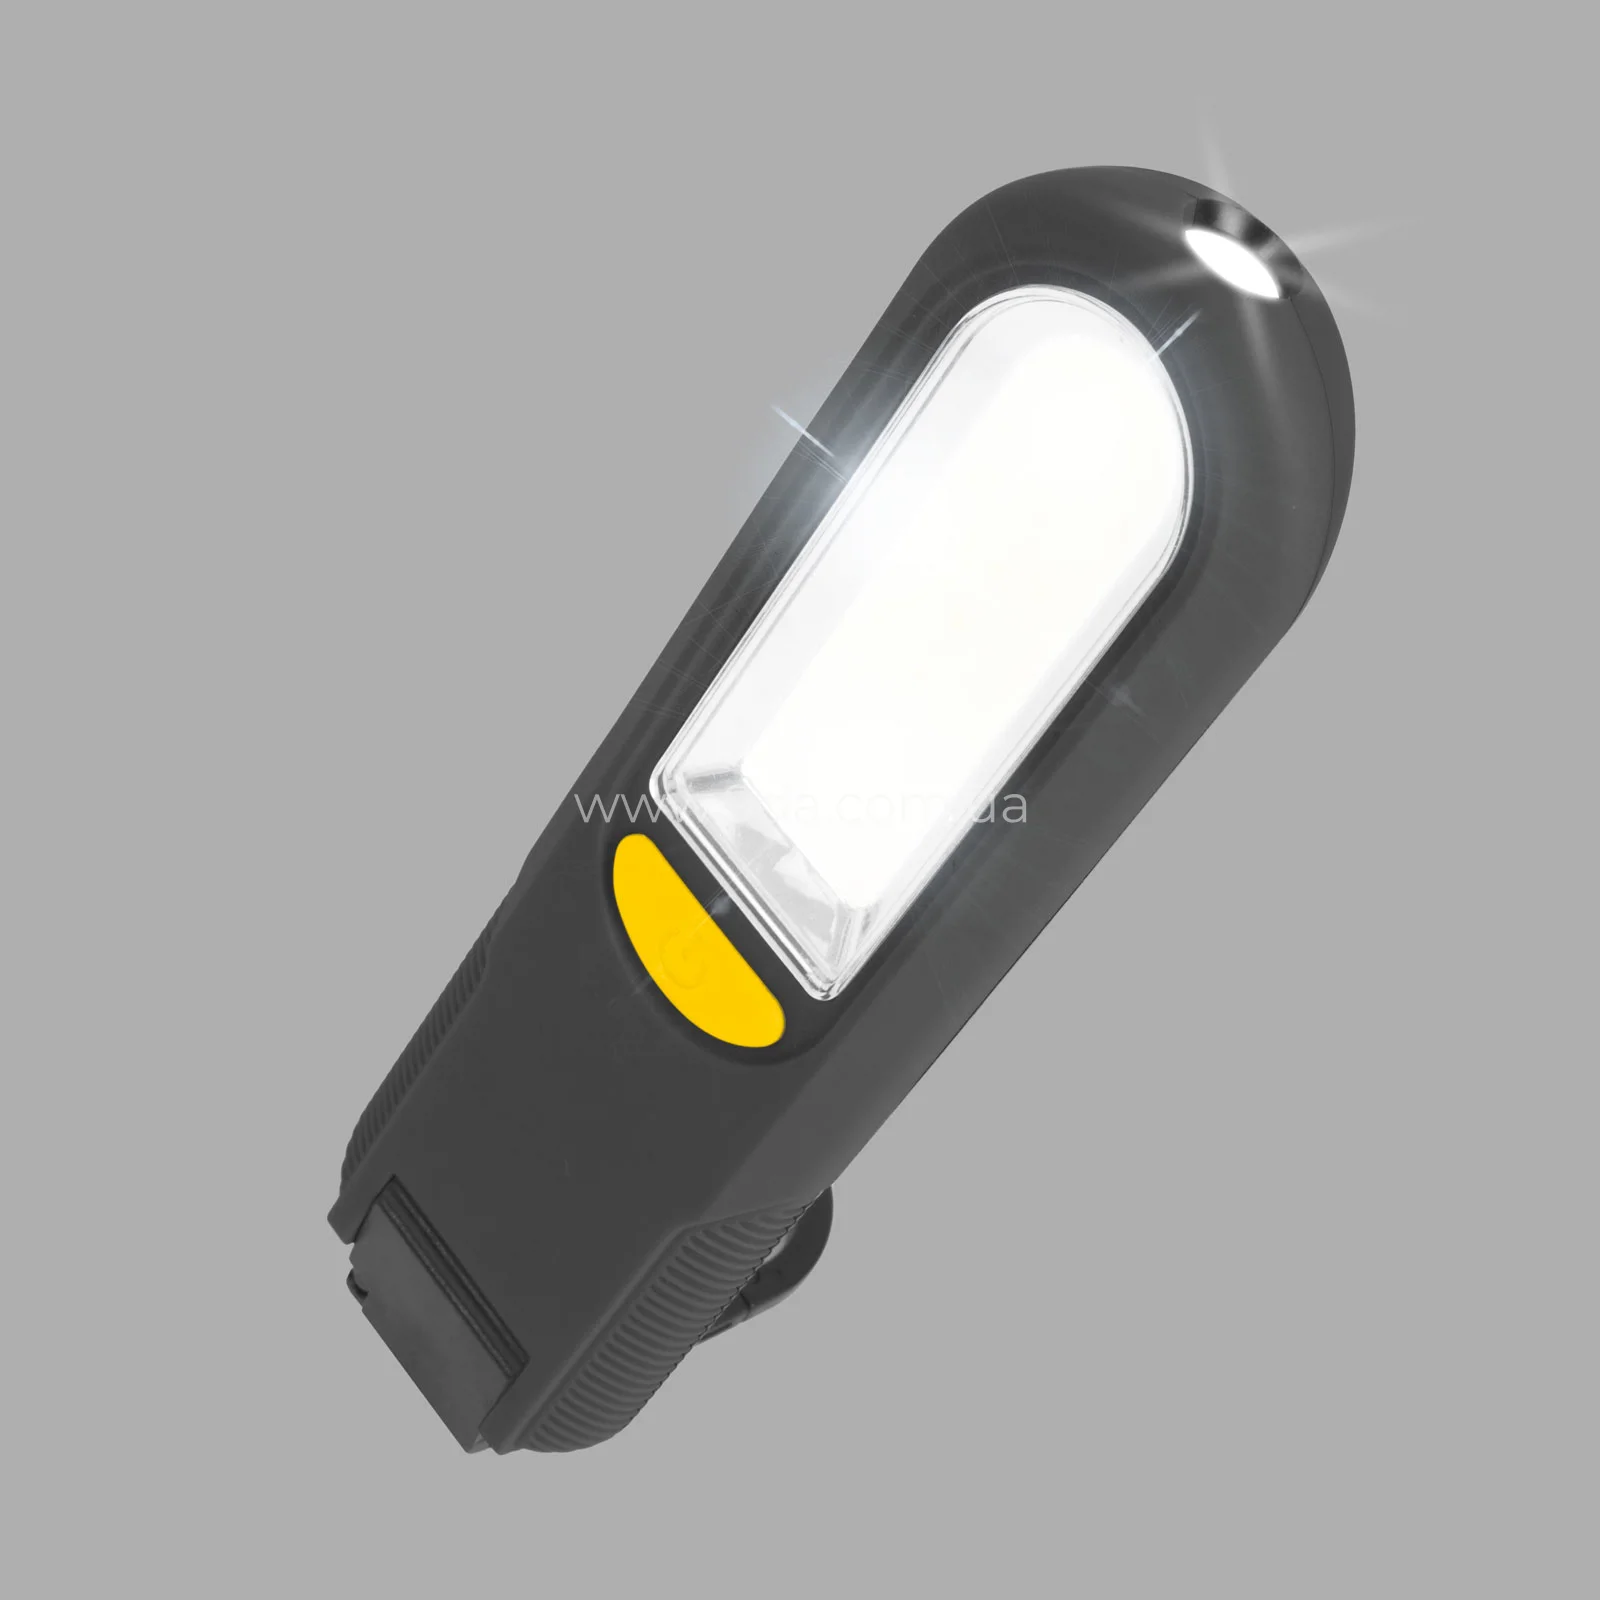 Ліхтар світлодіодний, 300люмен, COB + SMD LED, живлення - 3шт батарейки AAA (не входять в комплект), 180x51x25мм, 18614, KWeld - 2